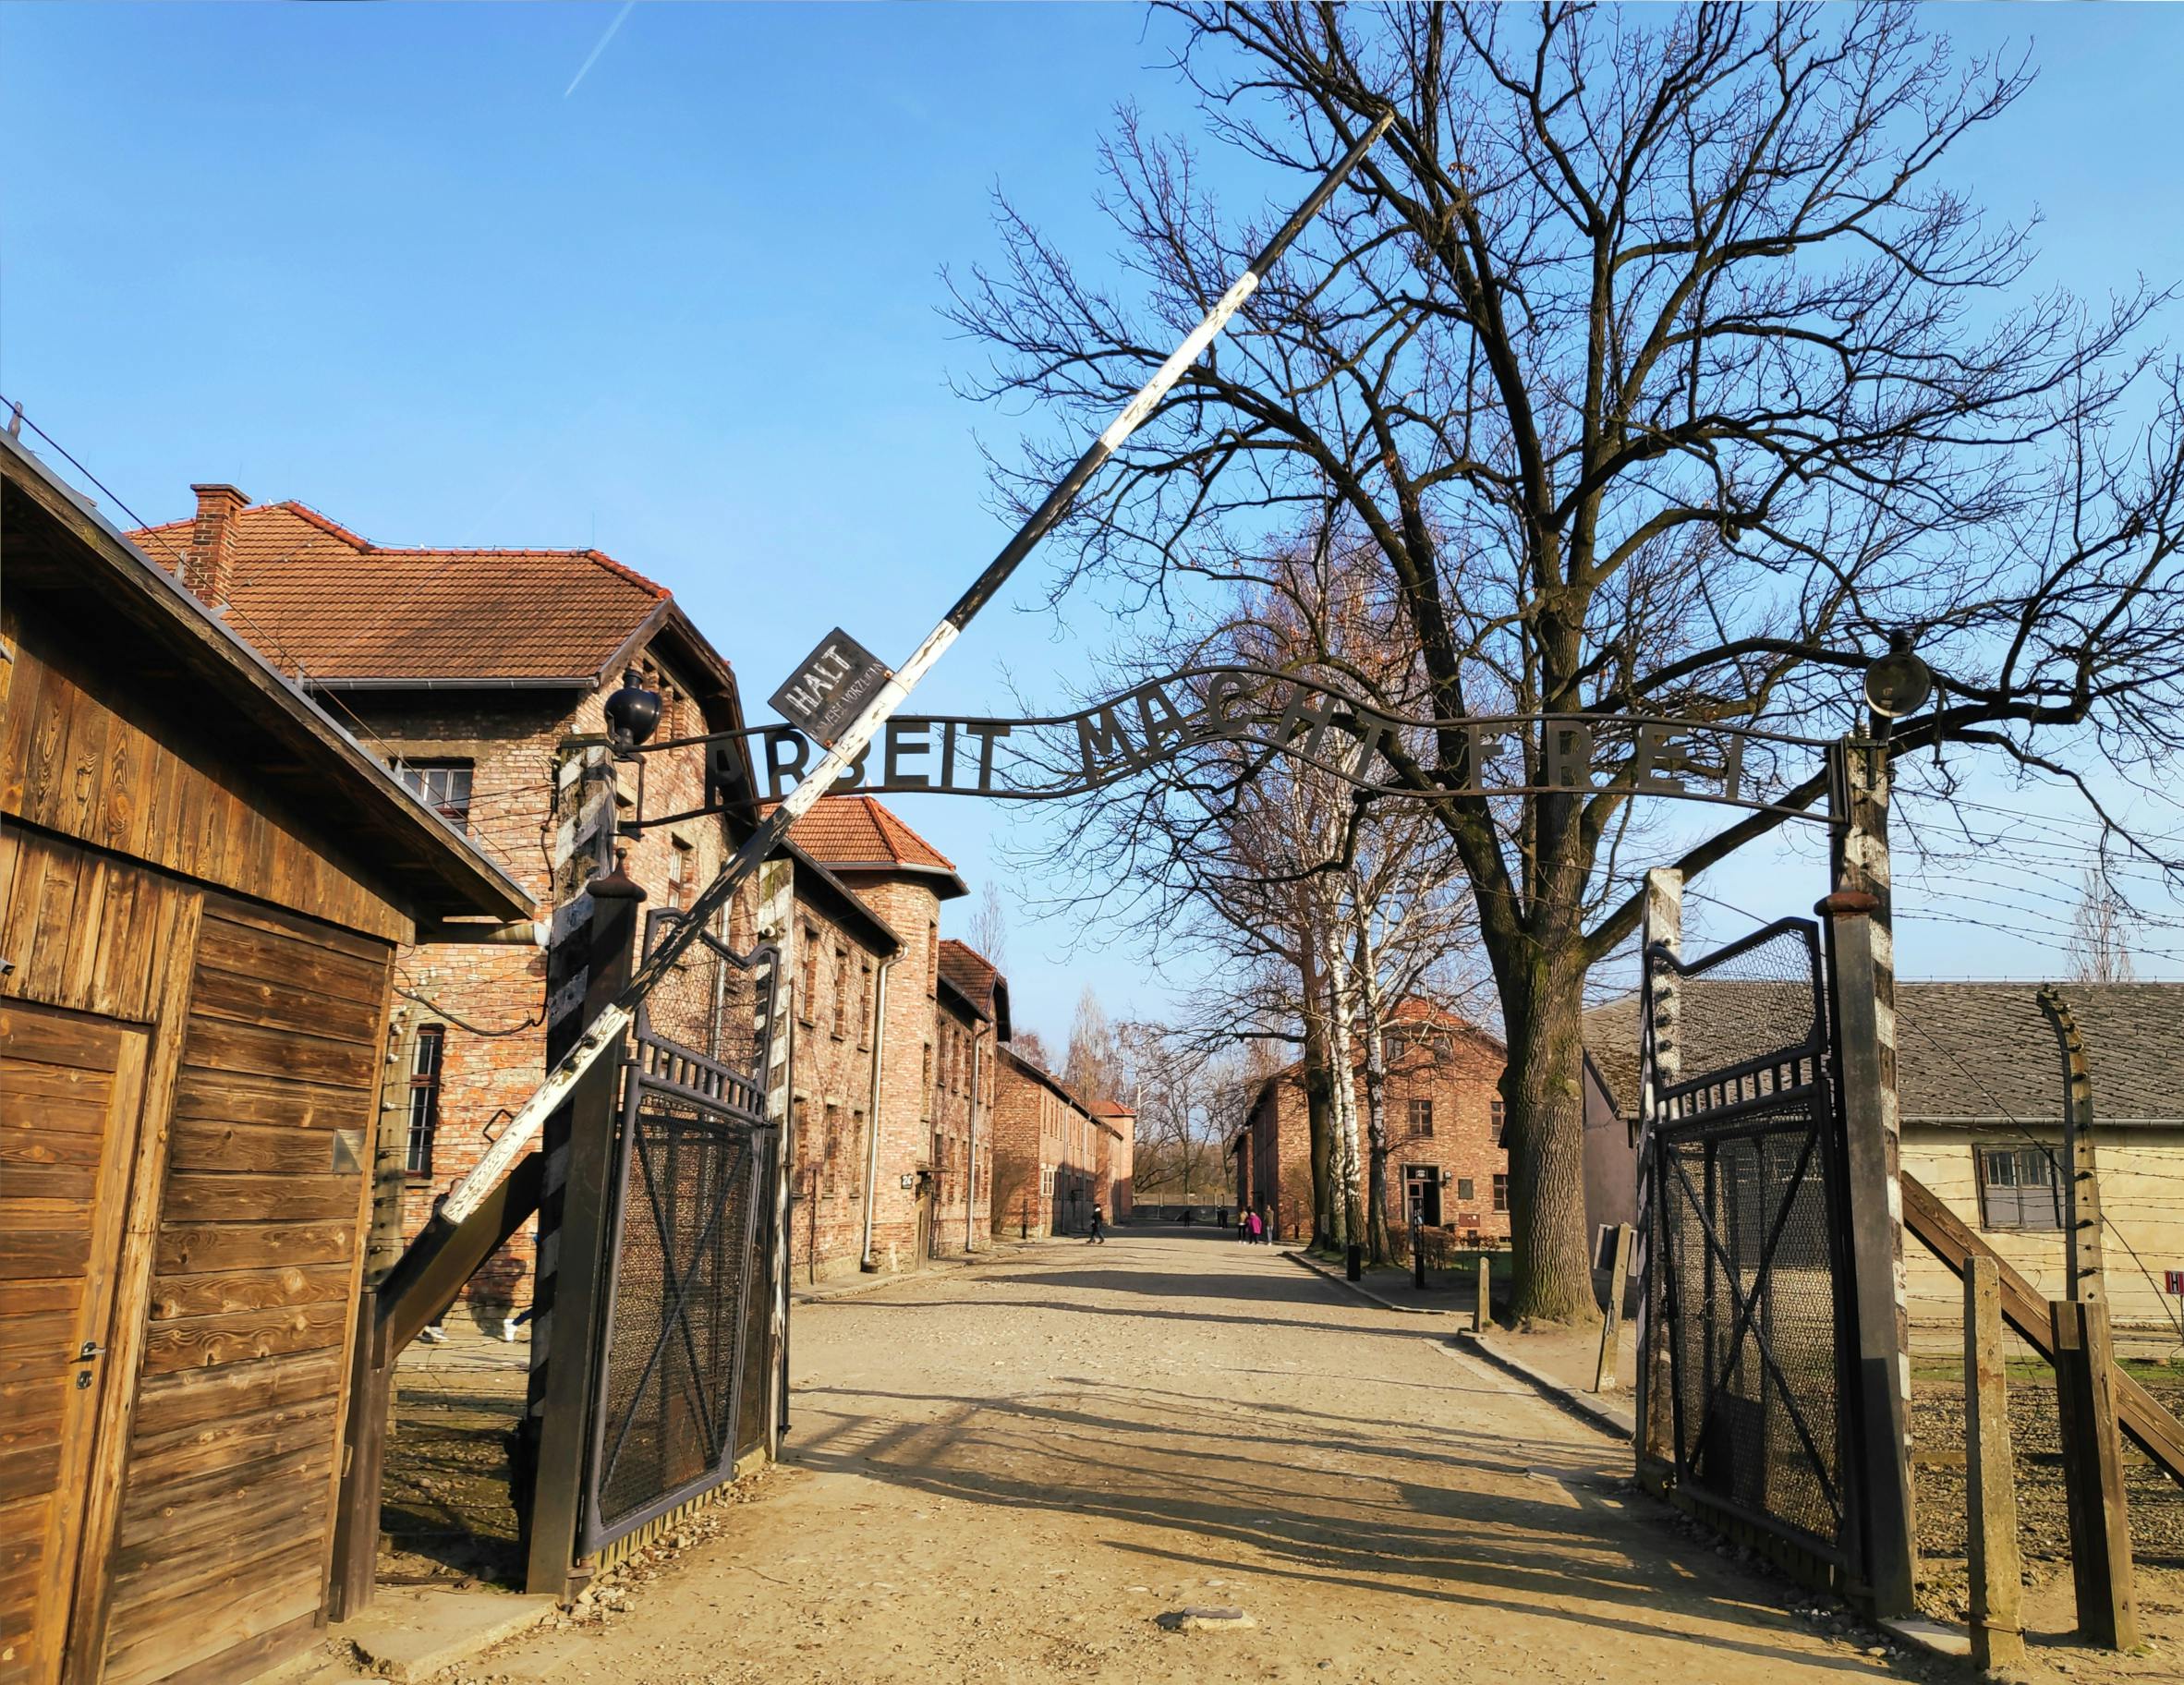 Auschwitz Birkenau and Wieliczka Salt Mine in one day from Krakow